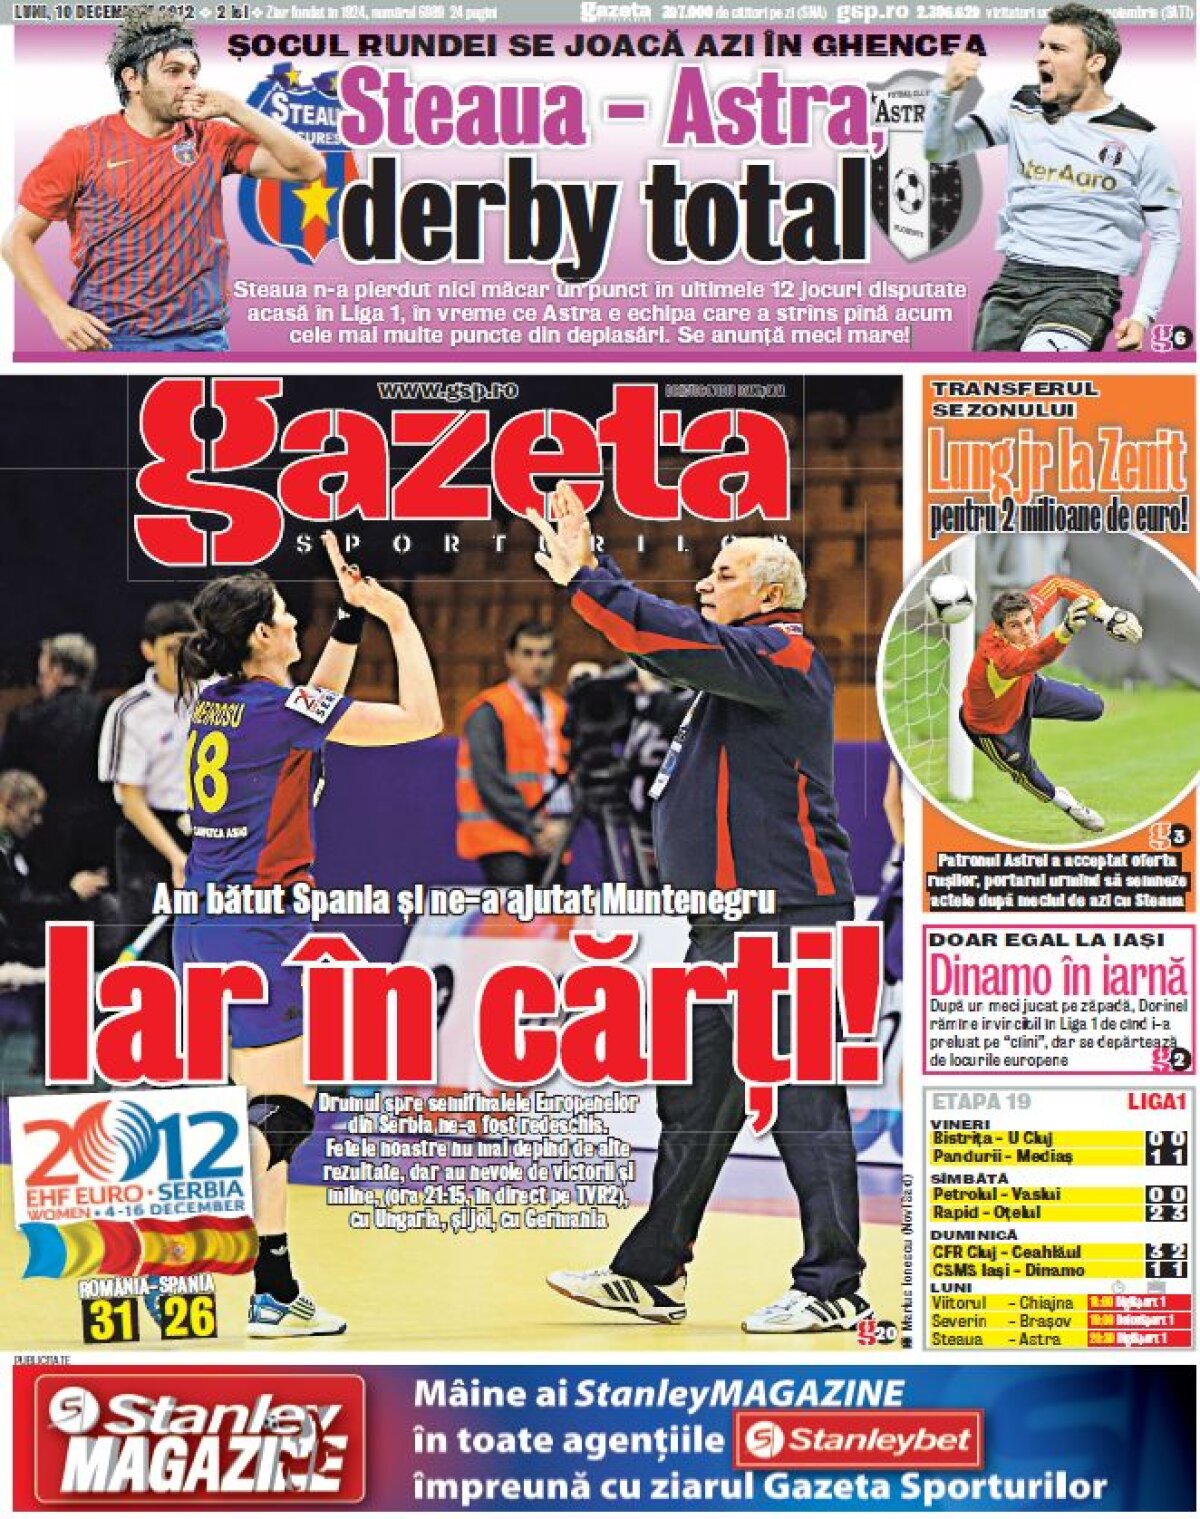 Derby-ul celor 5 derbyuri » Care sînt superlativele duelului dintre Steaua şi Astra